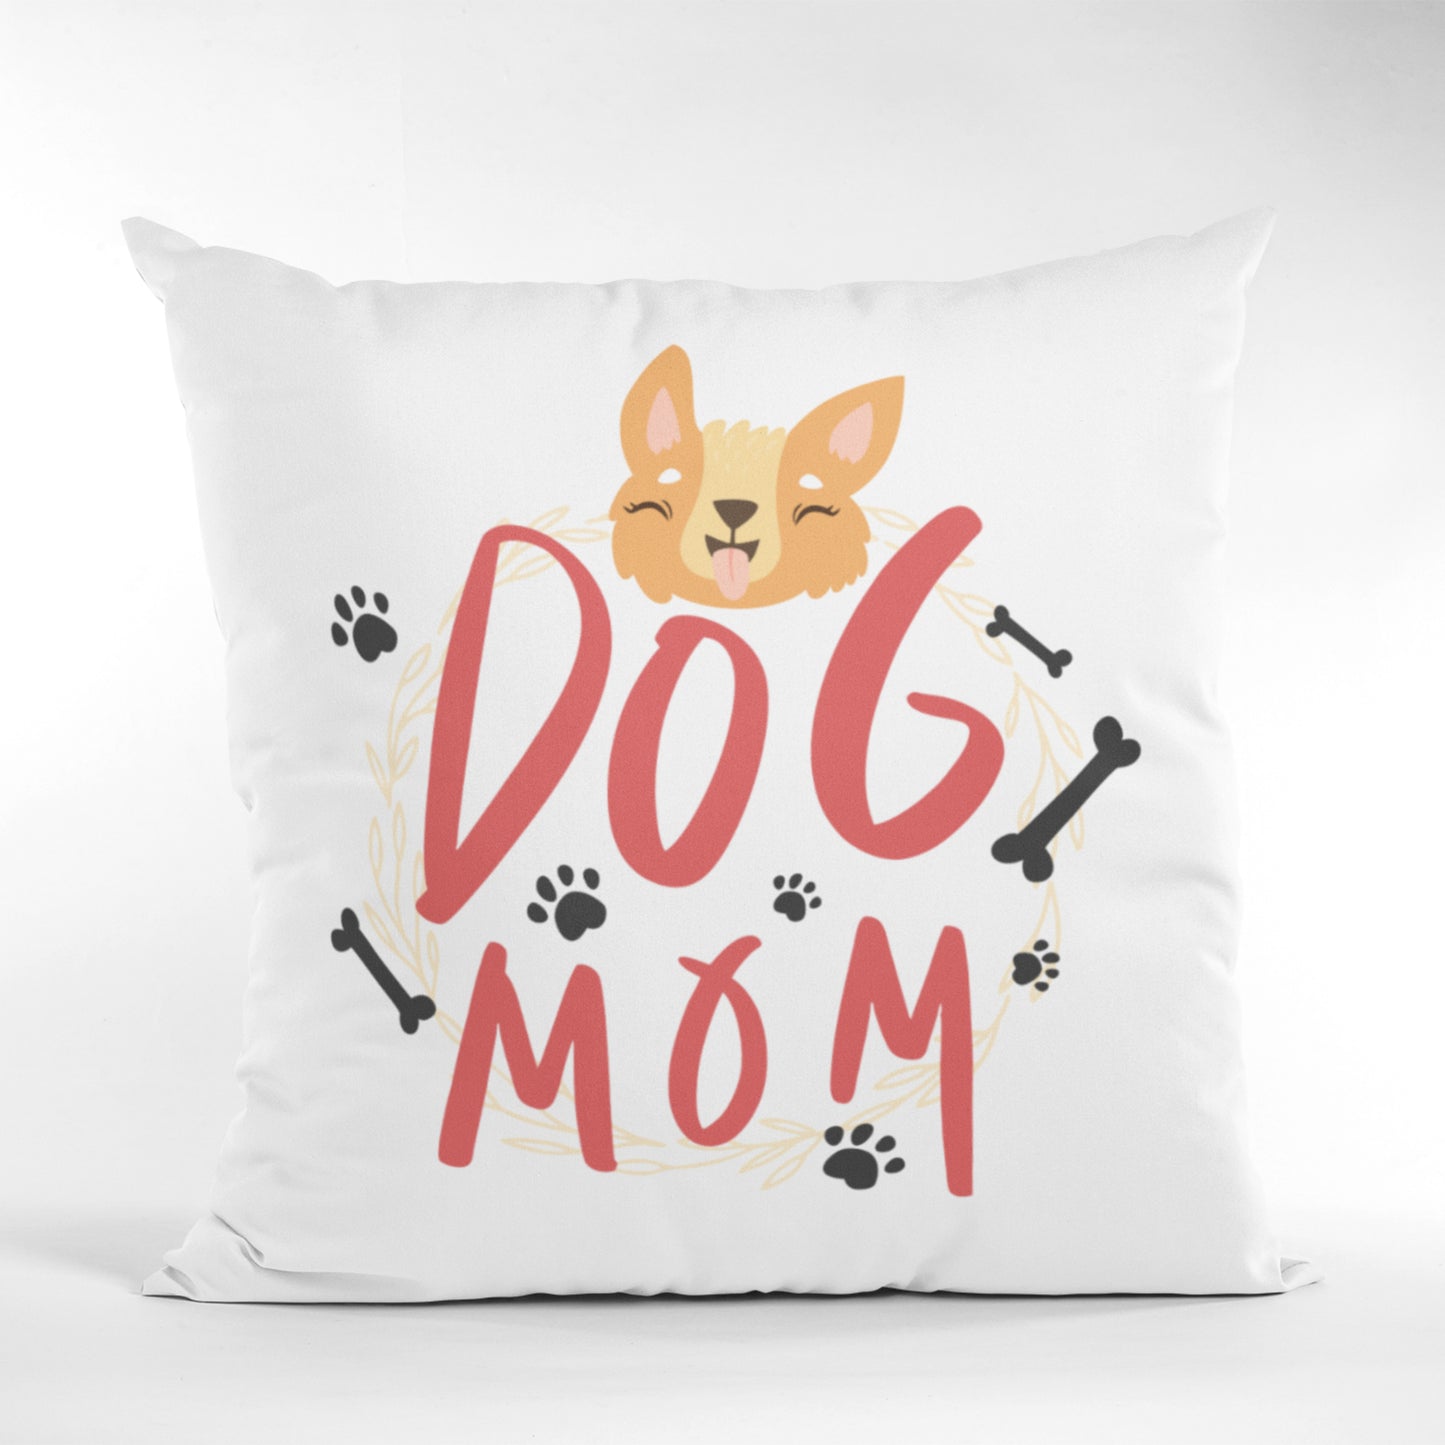 Homeezone's Dog Mom Theme Pillow